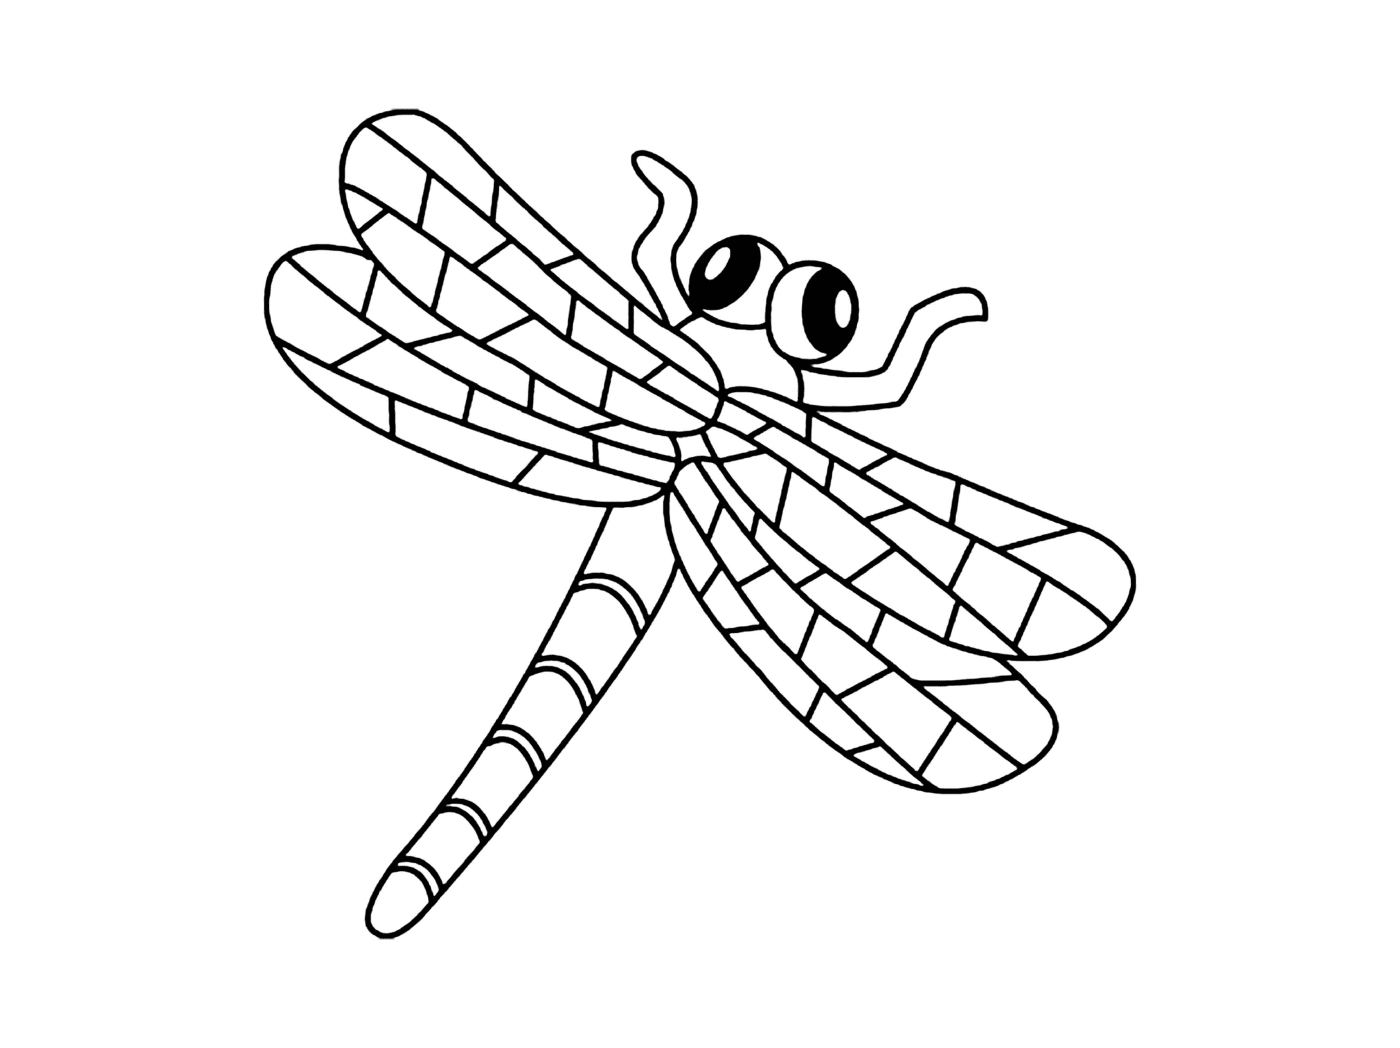  Easy: The dragonfly in kindergarten 